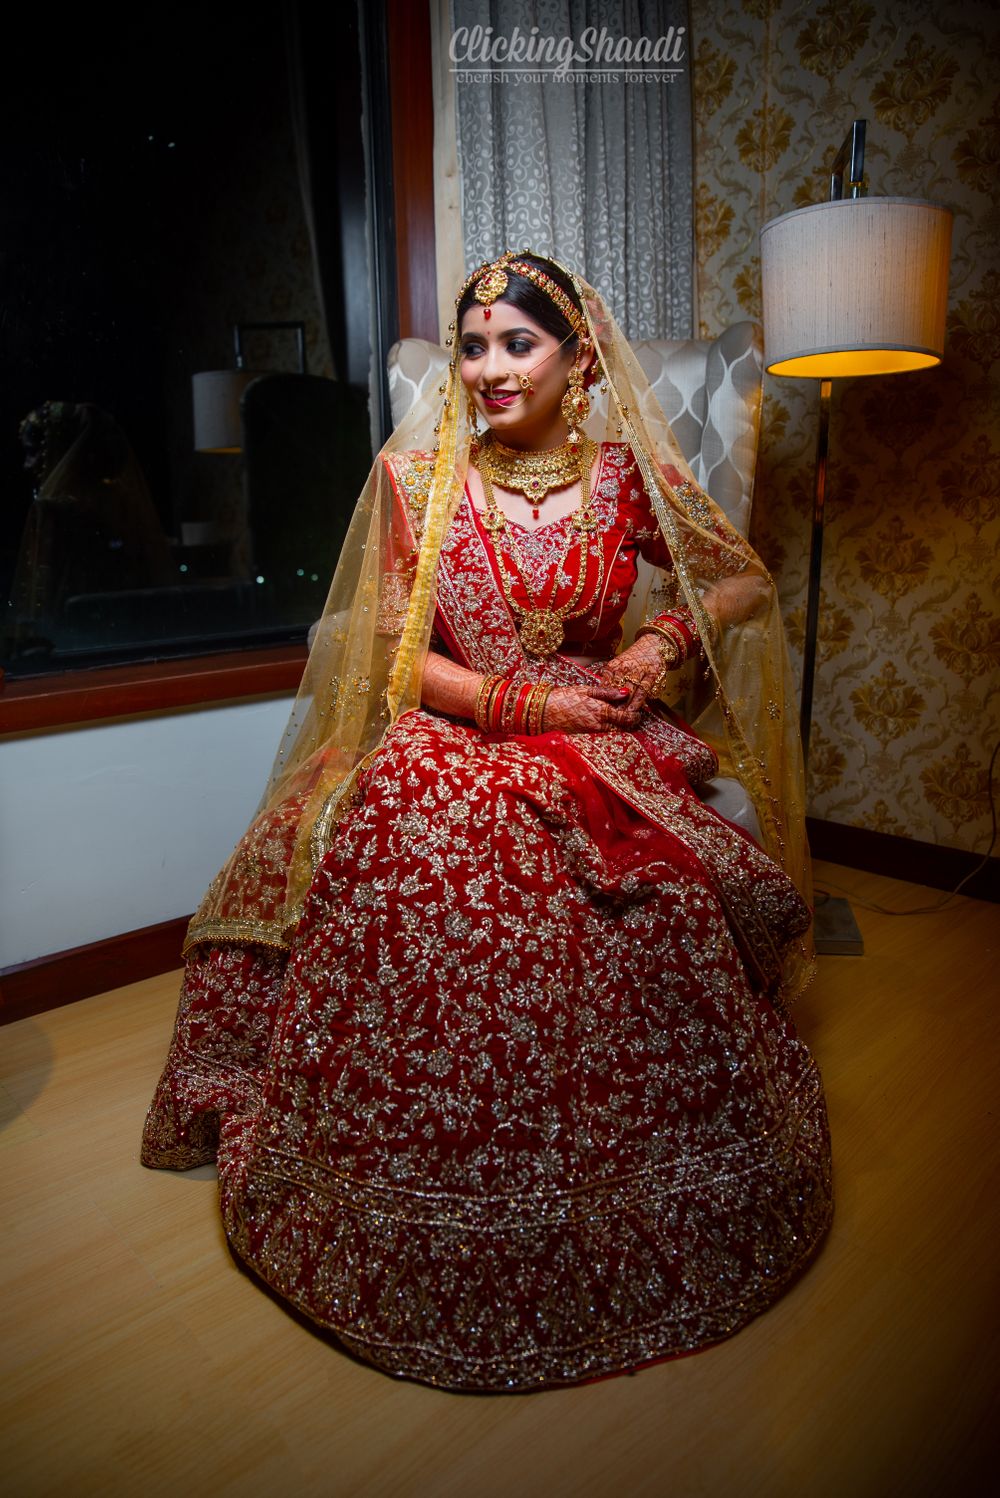 Photo From Aishwarya weds Anshul - By Clicking Shaadi